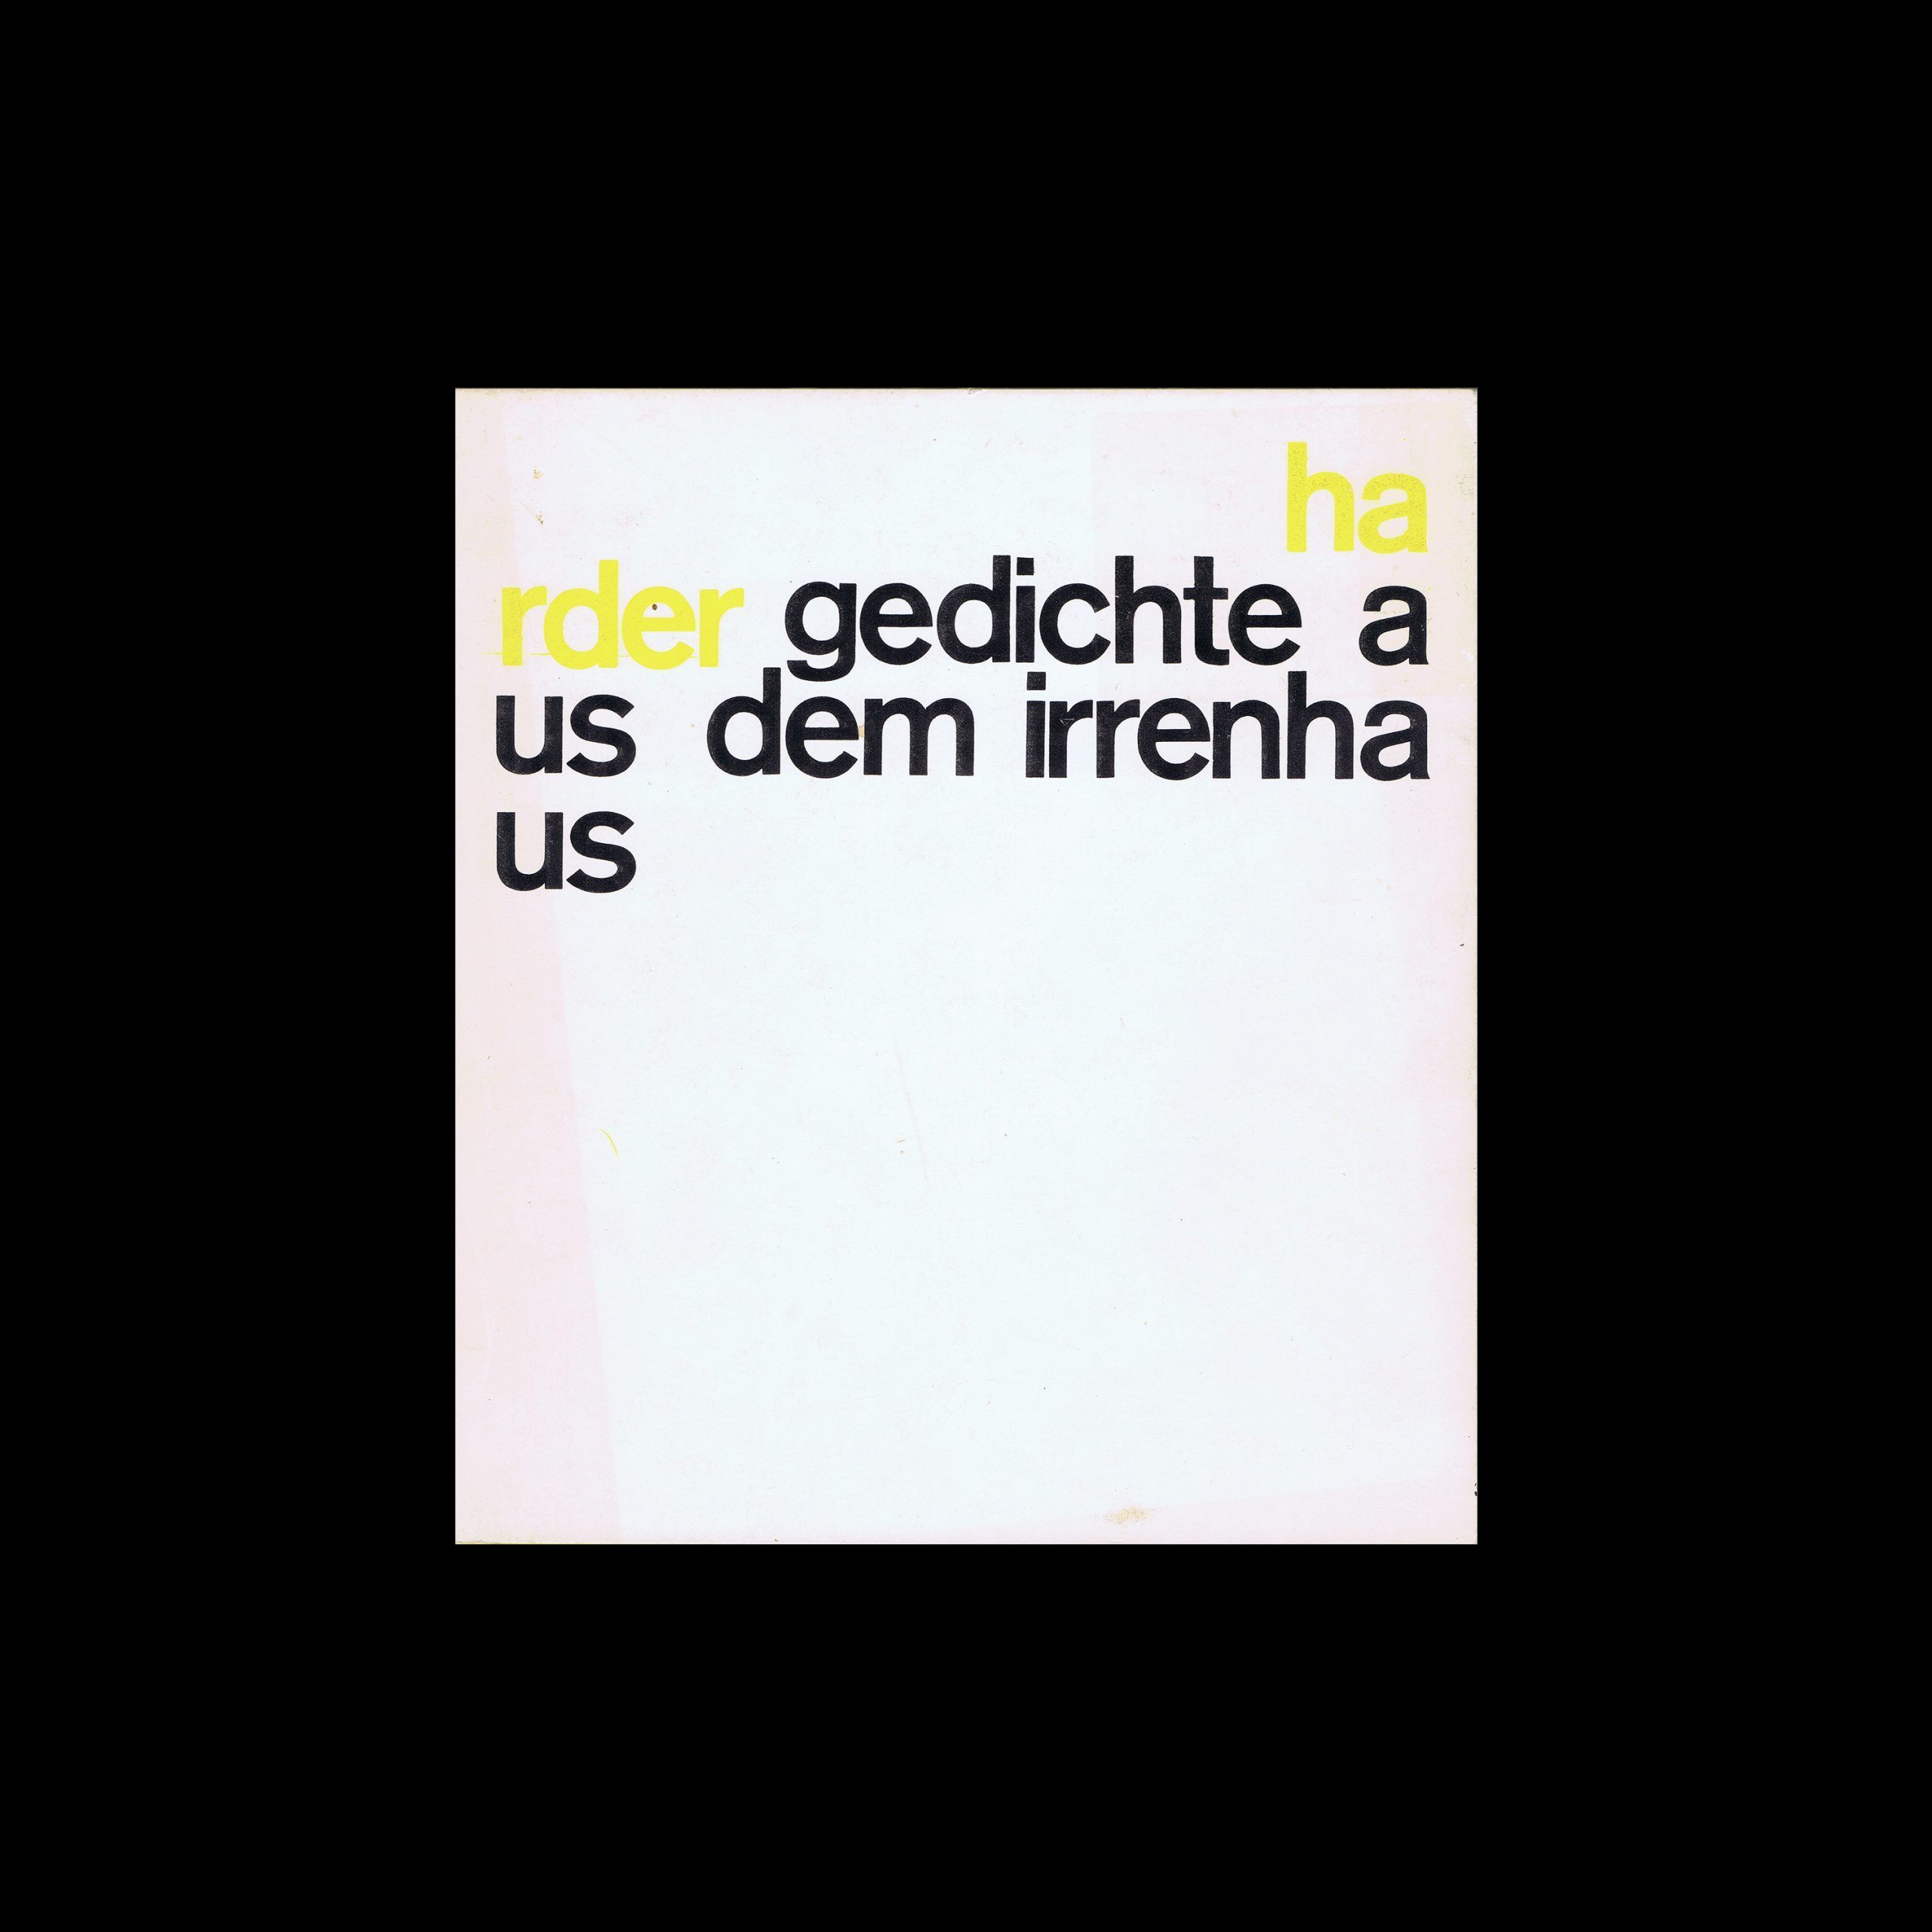 Heinz-Jürgen Harder, Gedichte aus dem Irrenhaus, Wolfgang Fietkau Verlag, 1979. Designed by Christian Chruxin